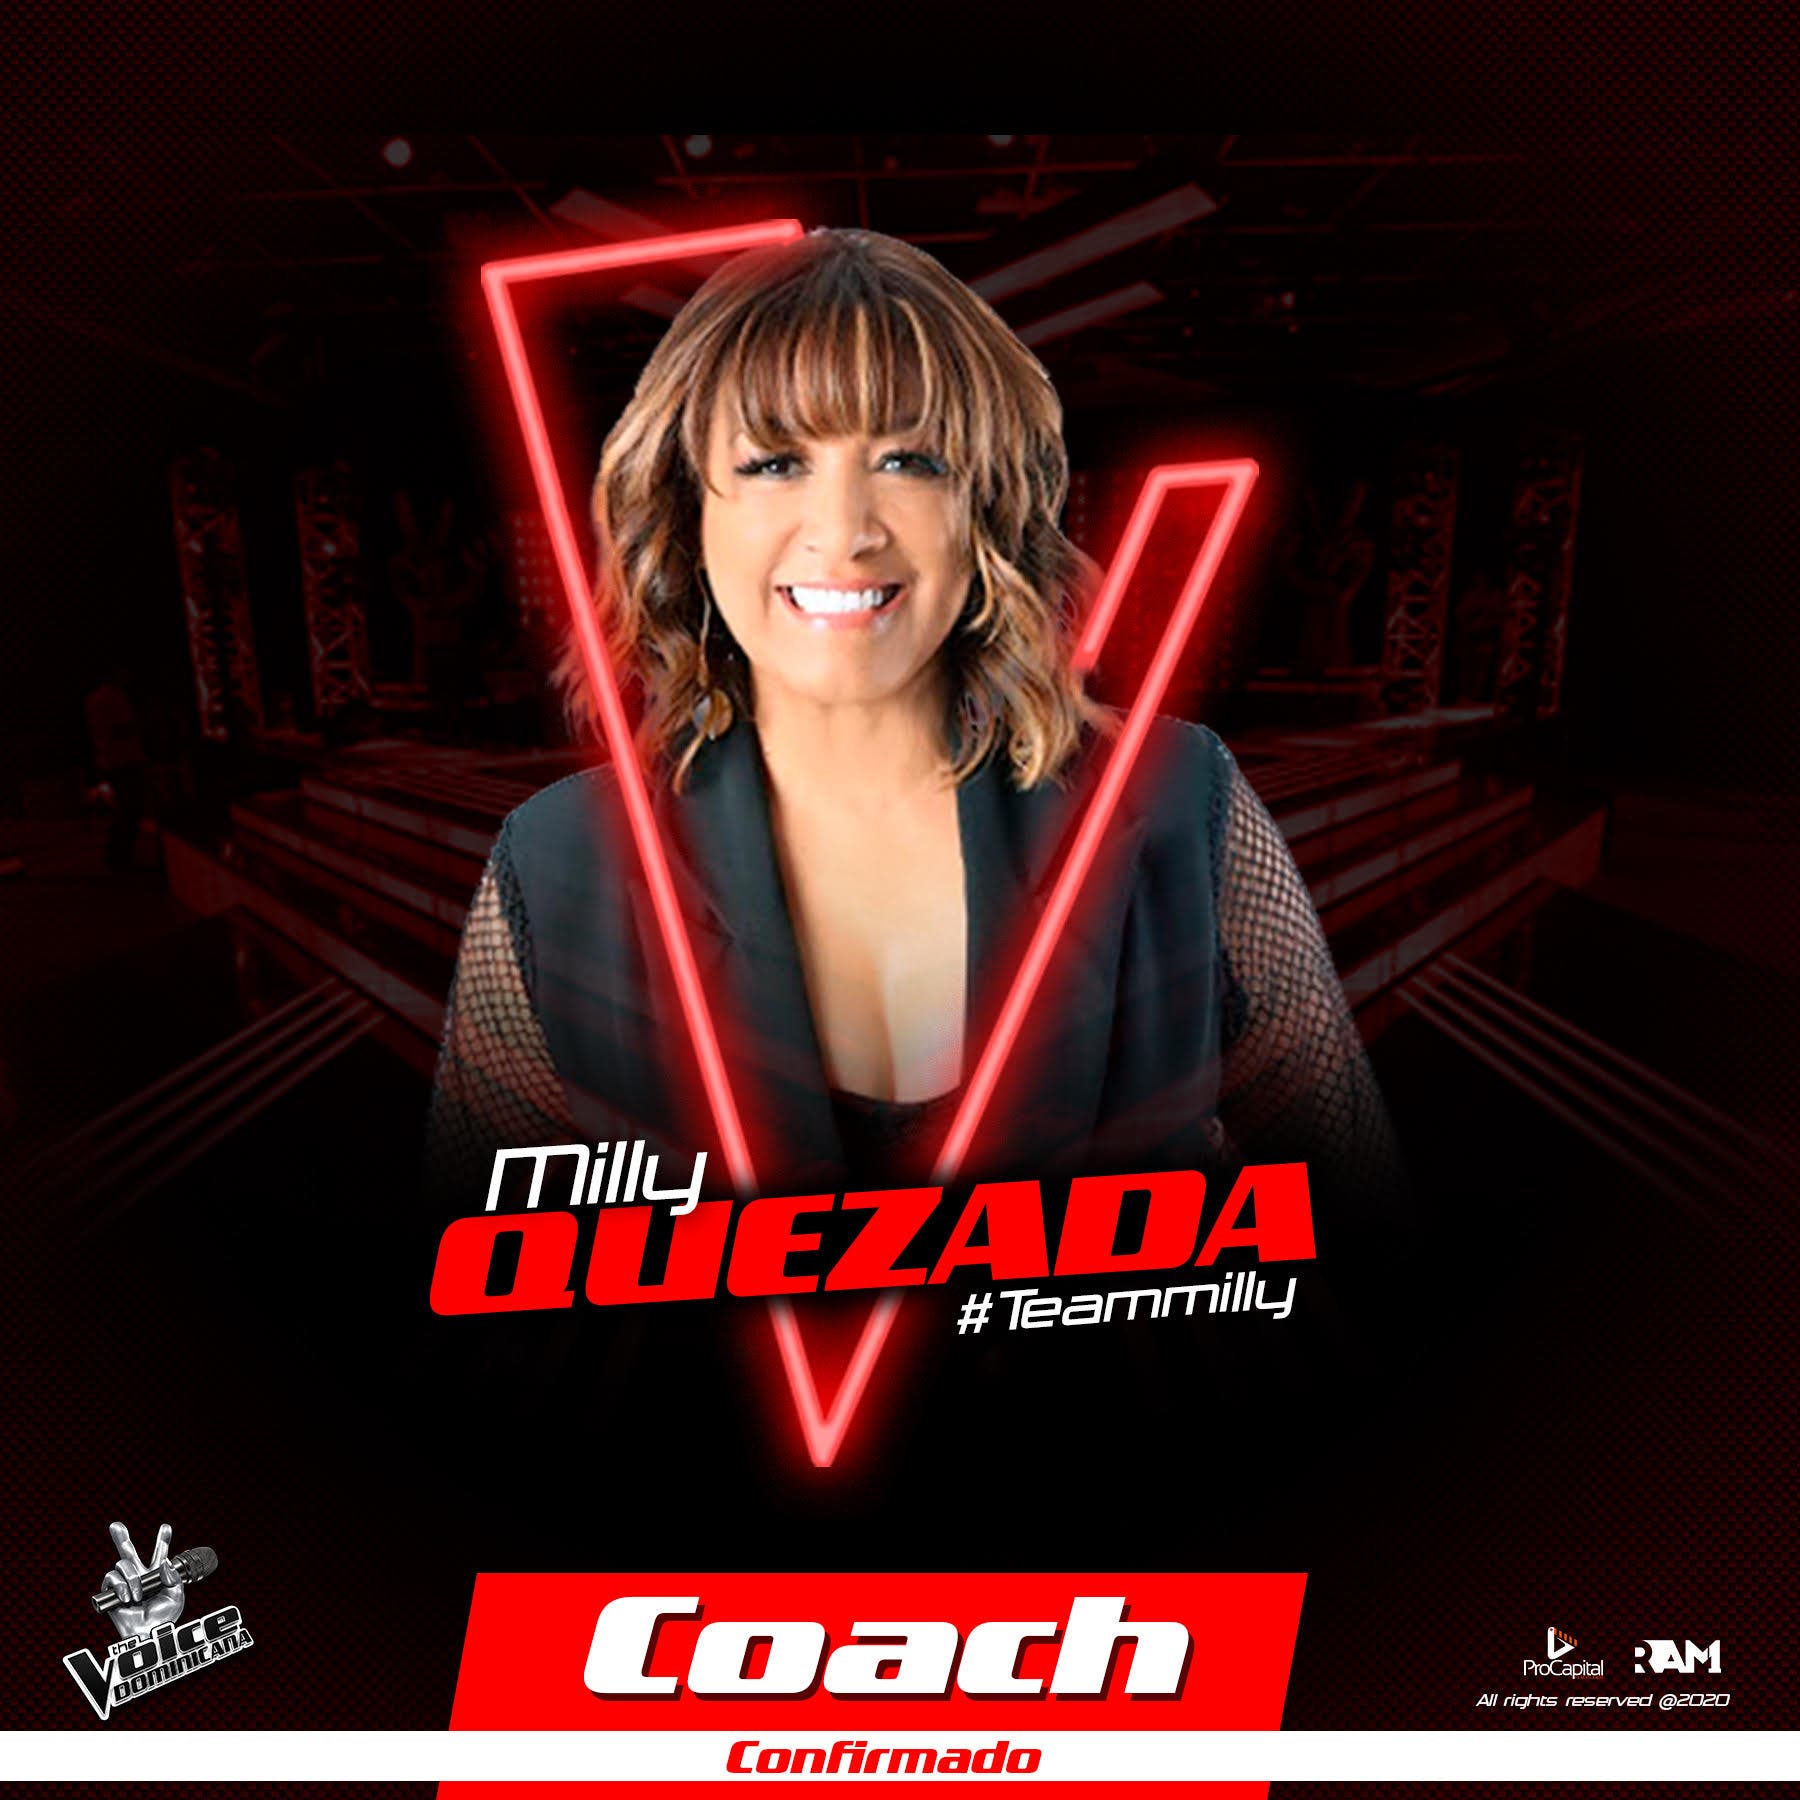 The Voice Dominicana anuncia a Milly Quezada como su segundo coach